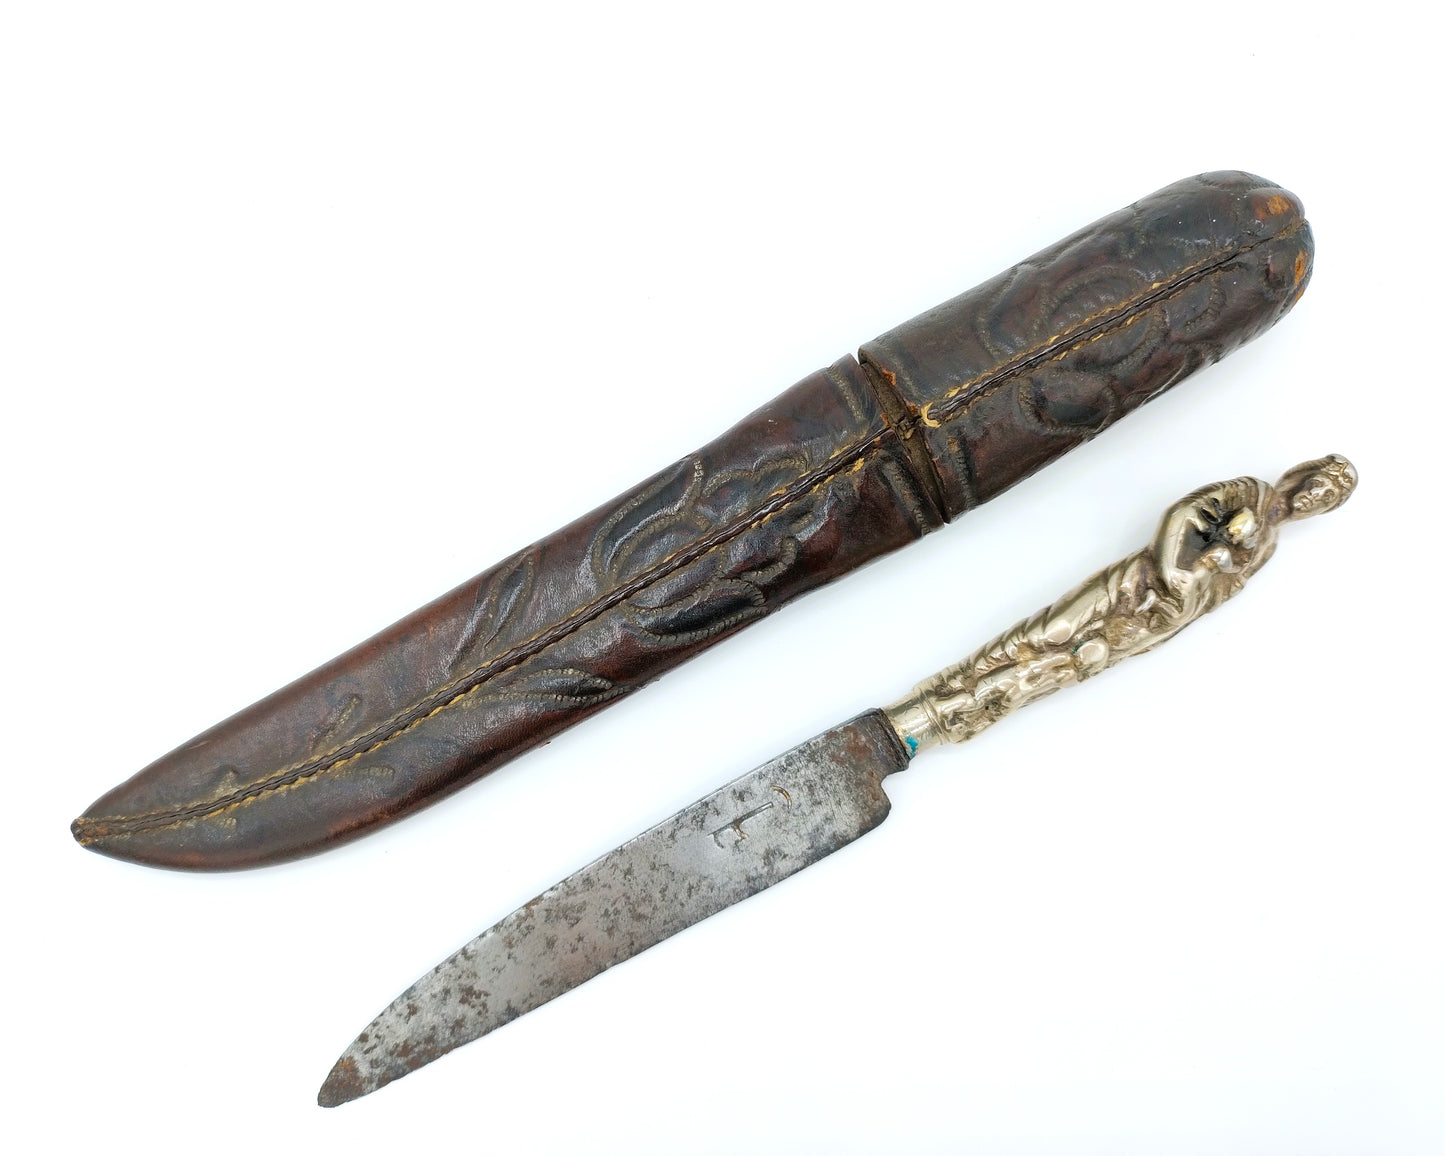 Schager mes met zilveren heft in leren foedraal, 17e eeuws.